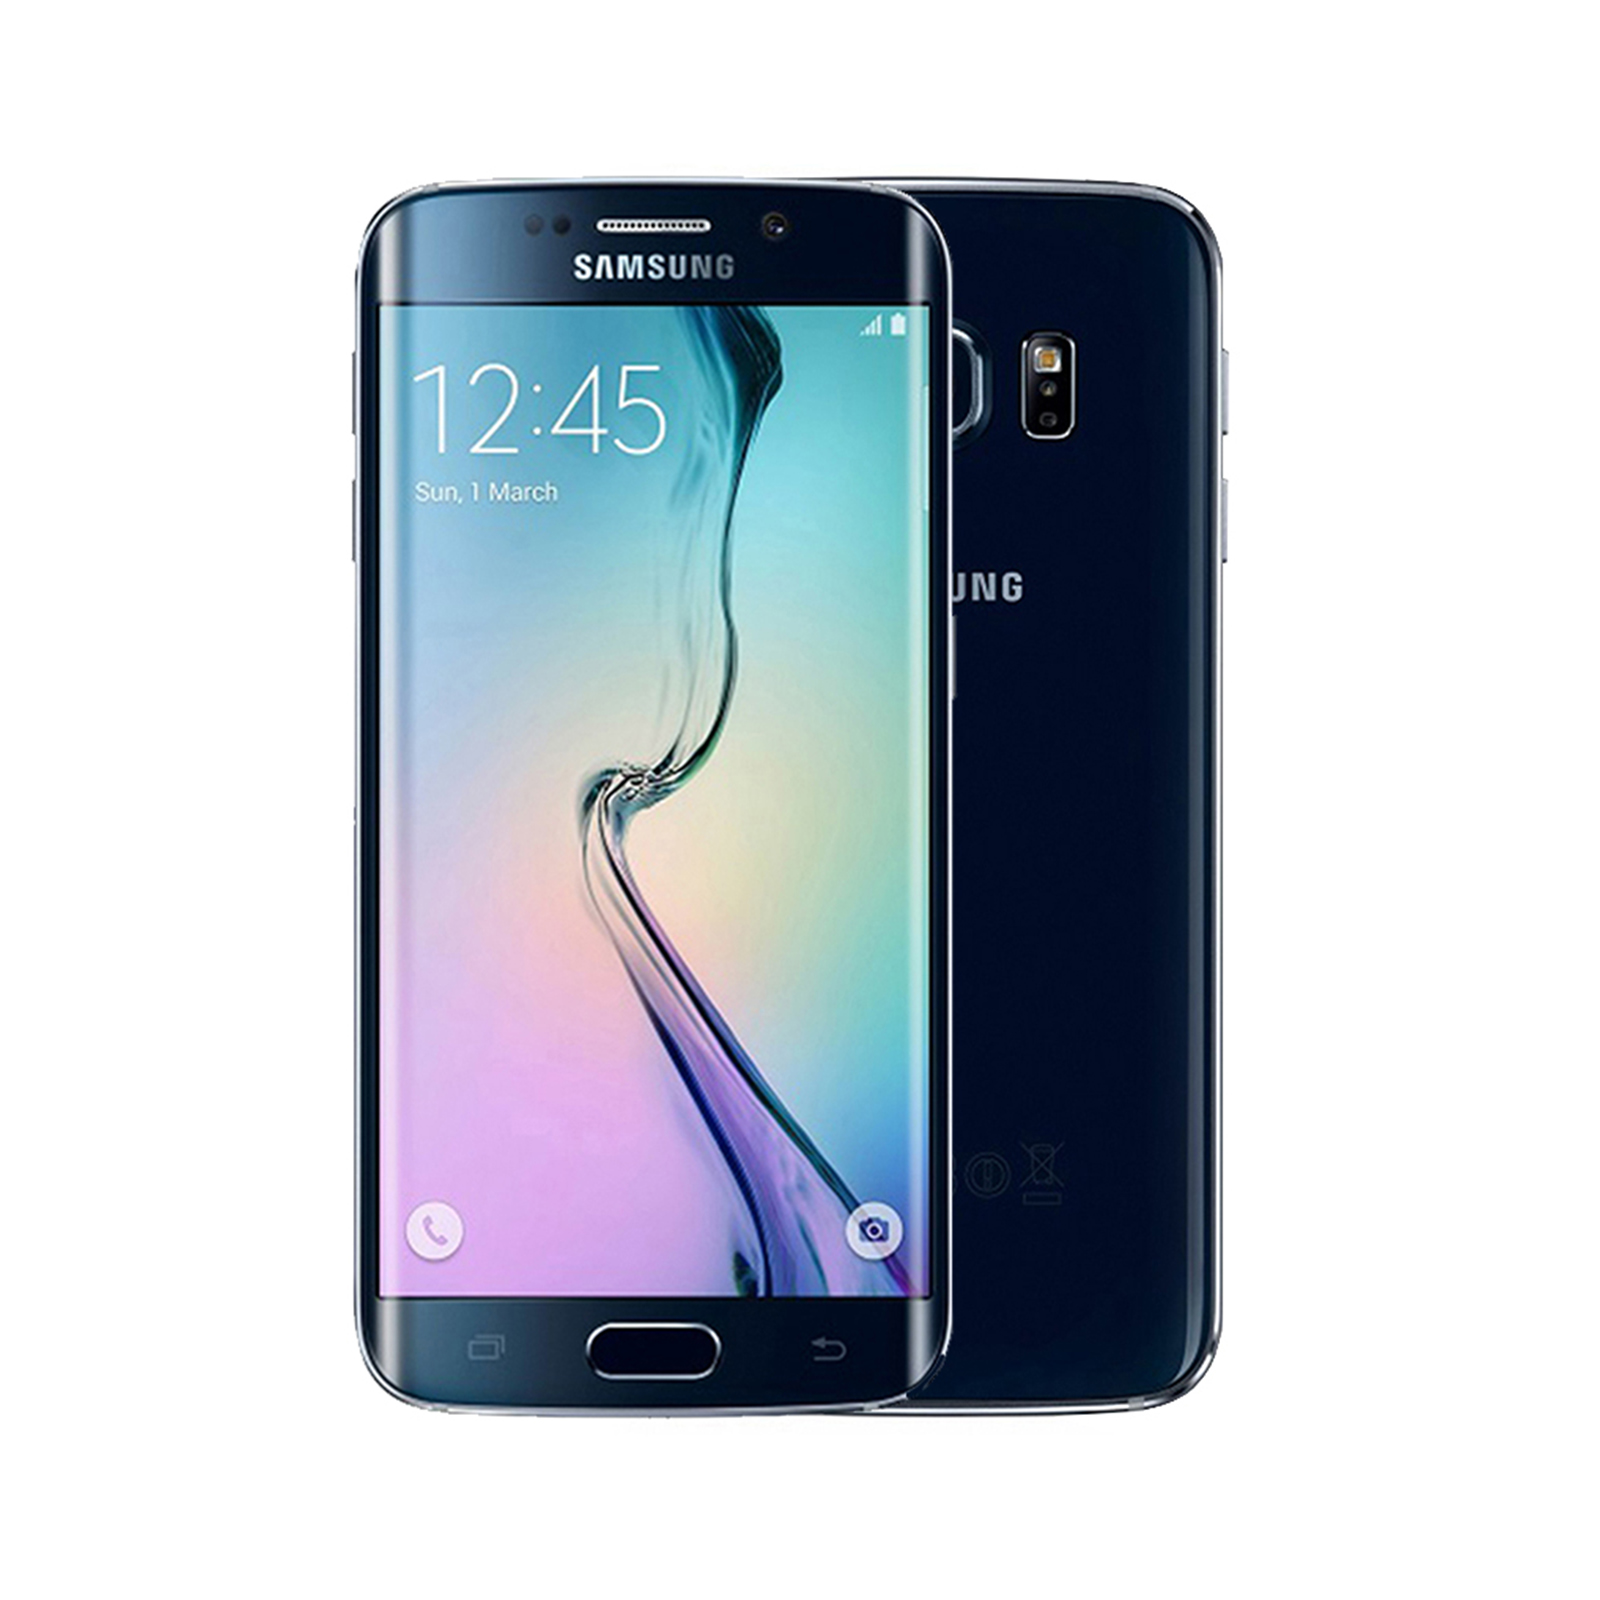 Samsung Galaxy S6 edge [32GB] [Black] [Very Good]